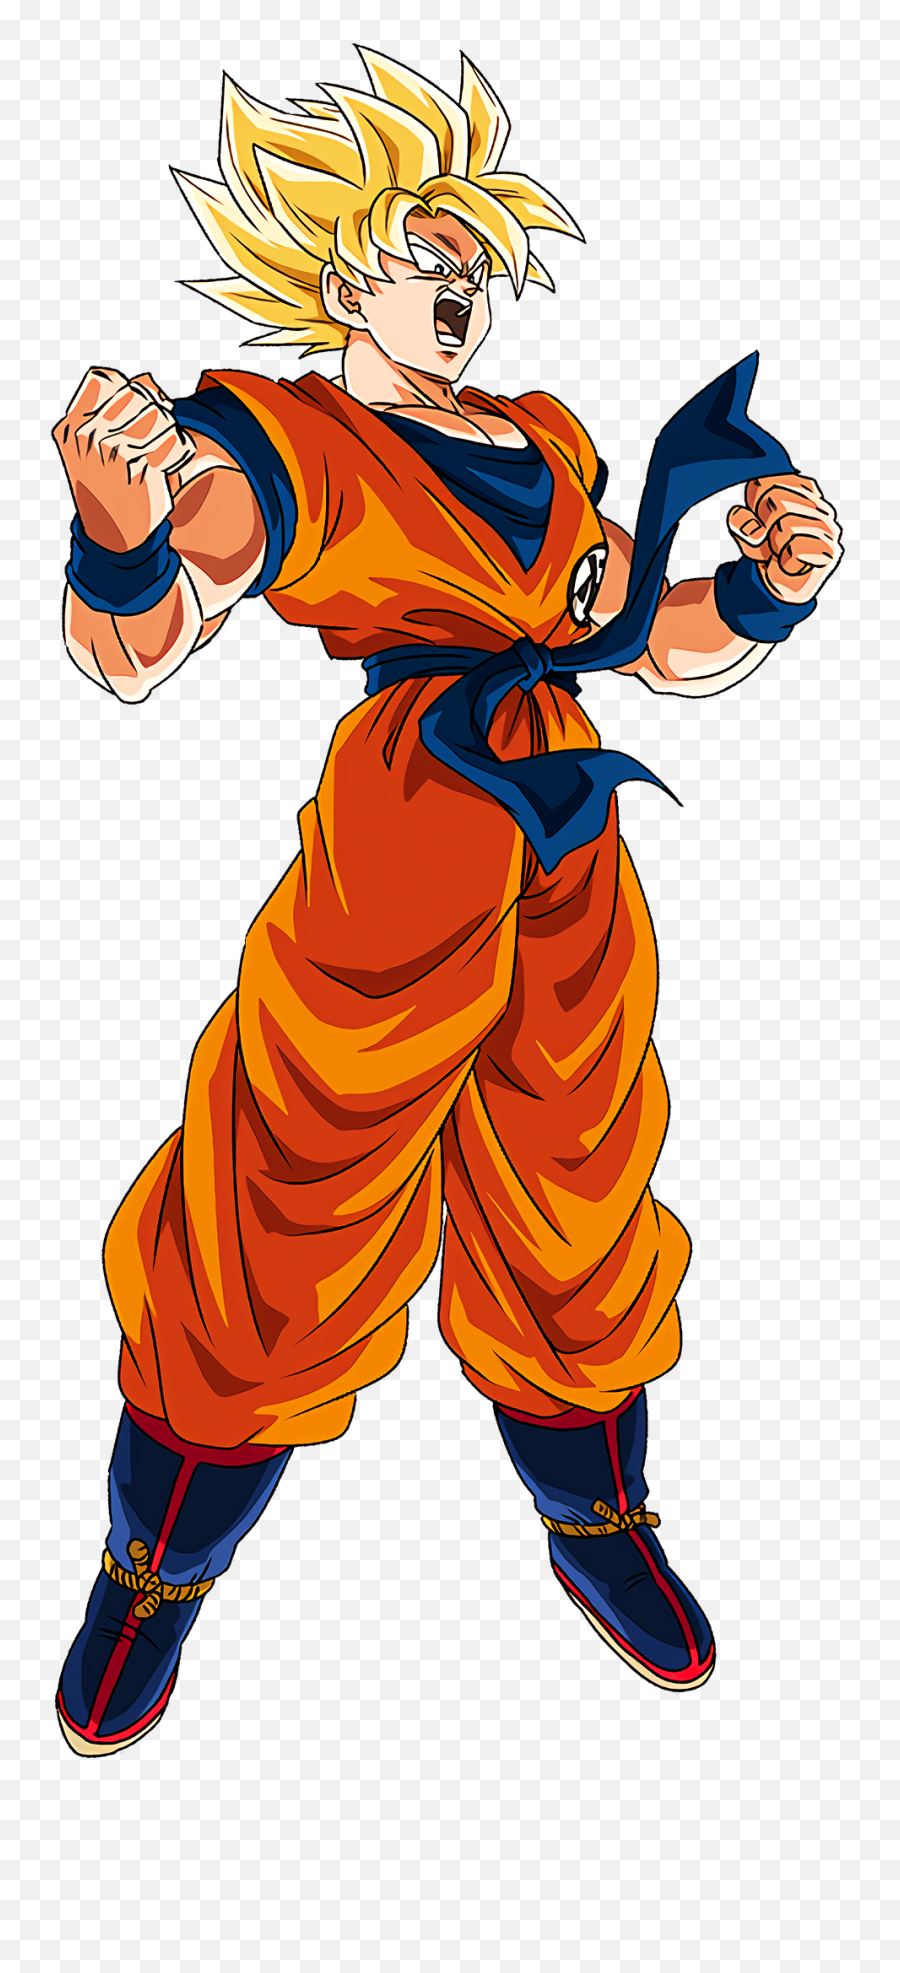 Struggle To Heat Up Super Saiyan Goku Render Dragon Ball Z - Goku Ssj Dragon Ball Super Broly Emoji,Super Saiyan Emoji